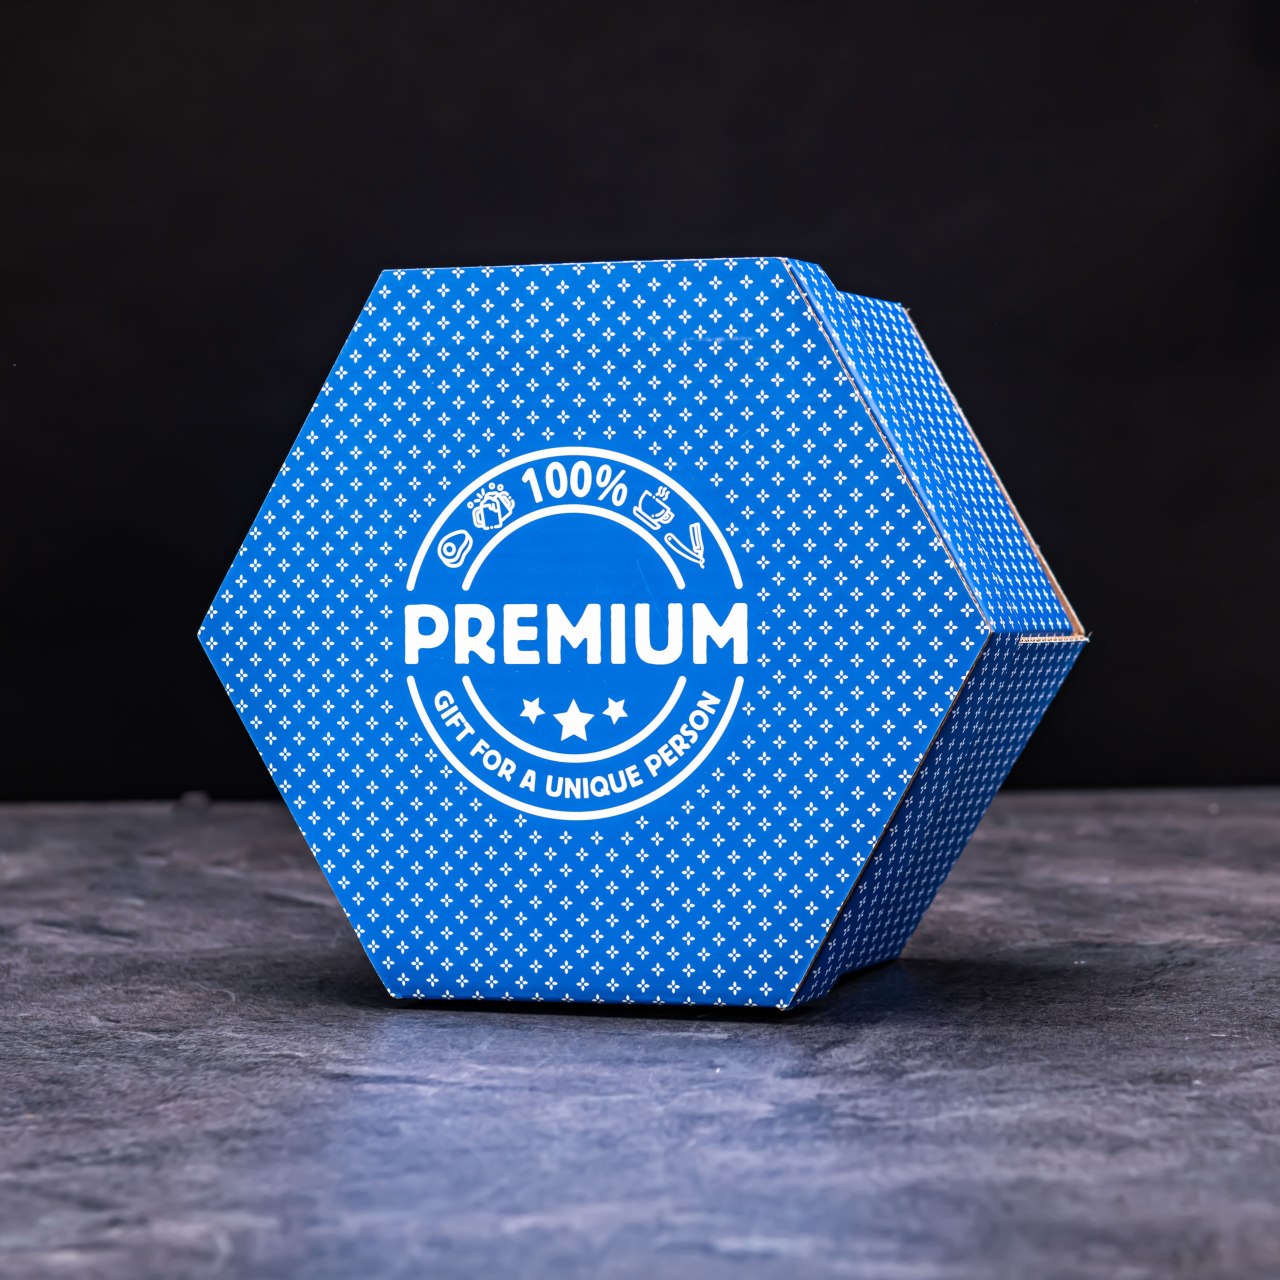 Hexagon plný luxusních holících potřeb - Modrý